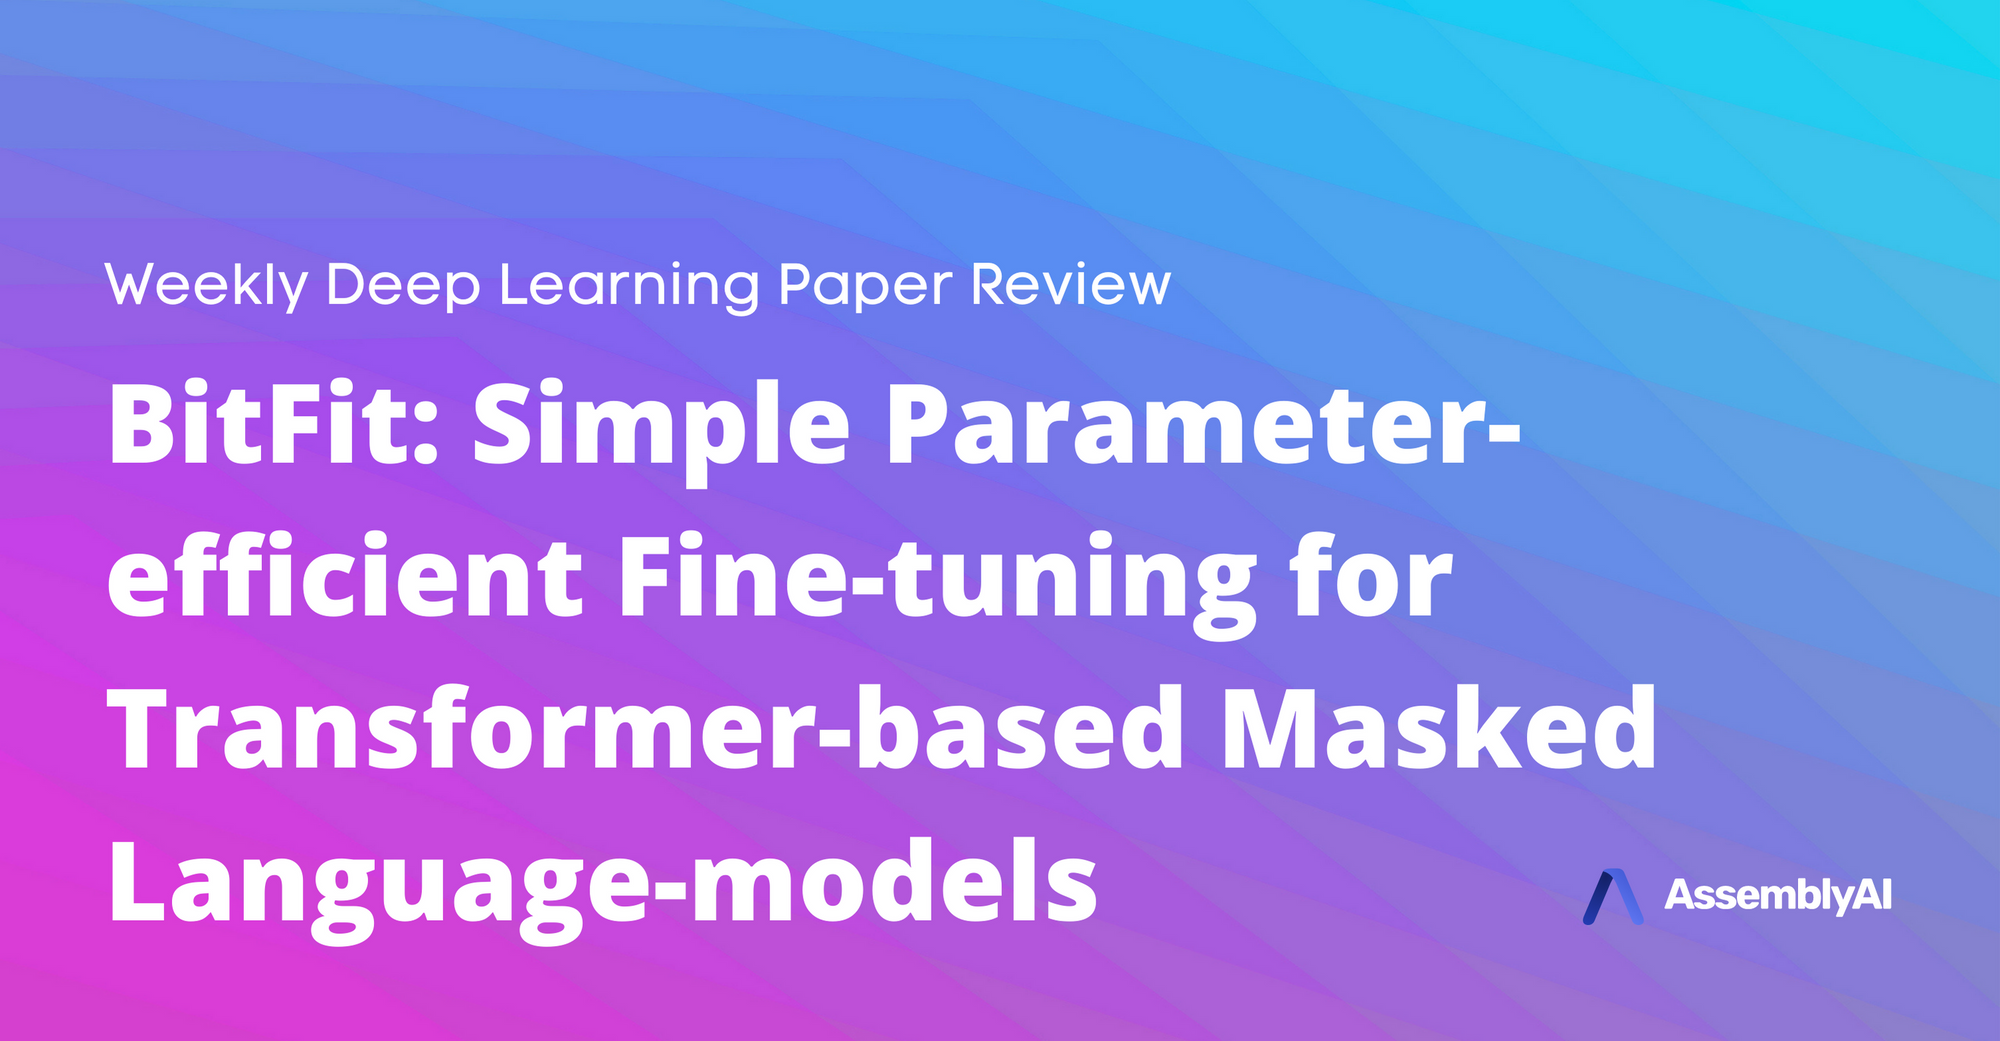 BitFit: Simple Parameter-efficient Fine-tuning for Transformer-based Masked Language-models